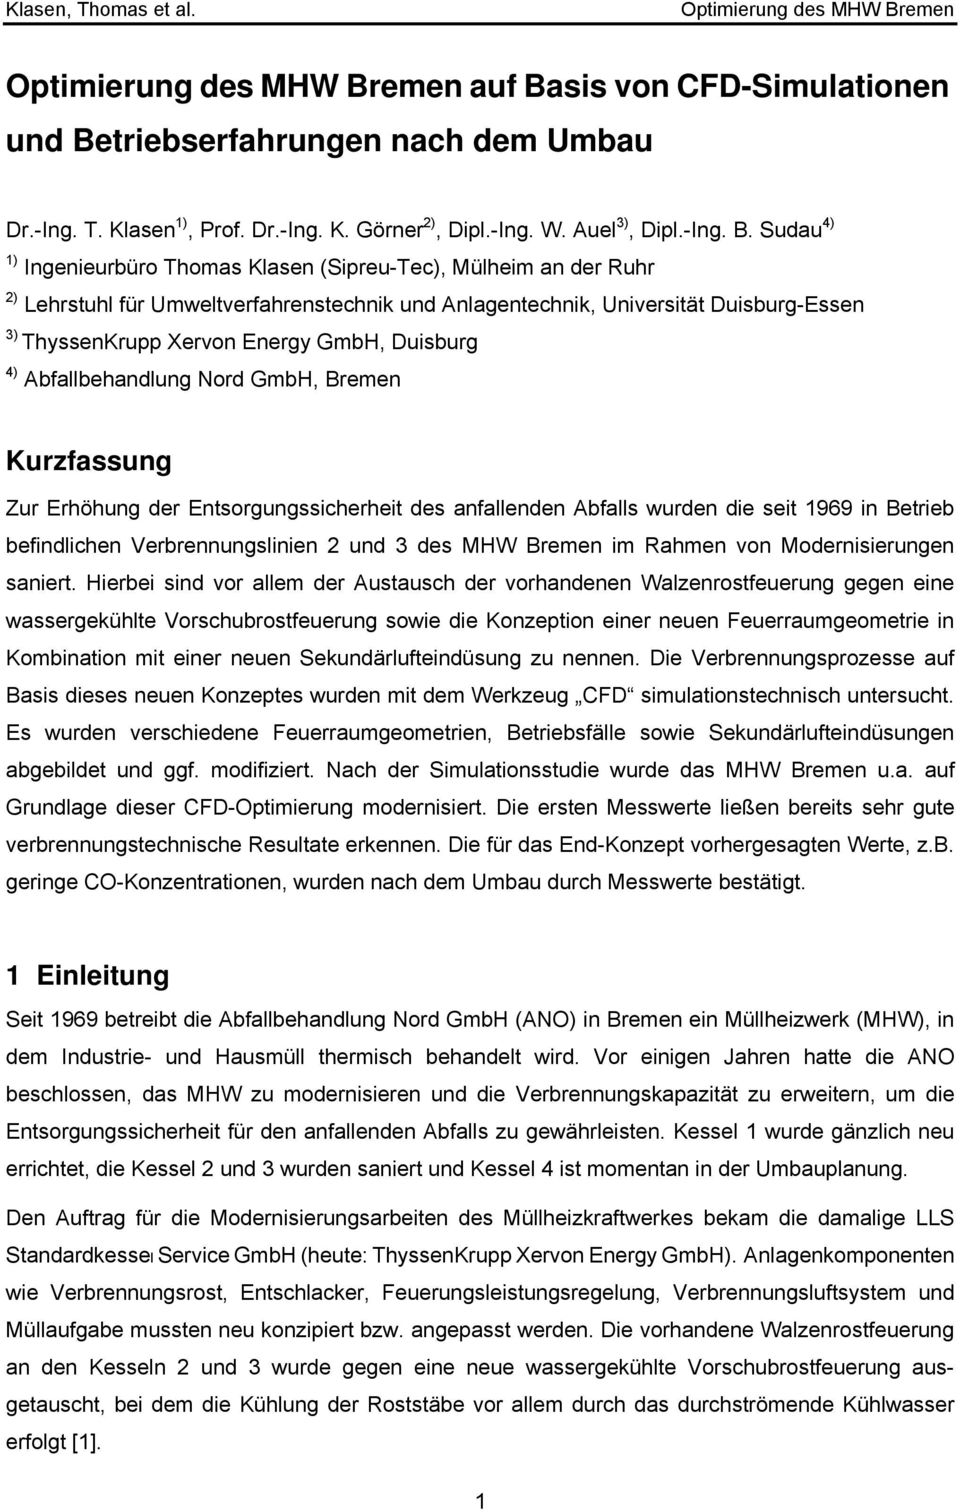 triebserfahrungen nach dem Umbau Dr.-Ing. T. Klasen 1), Prof. Dr.-Ing. K. Görner 2), Dipl.-Ing. W. Auel 3), Dipl.-Ing. B.